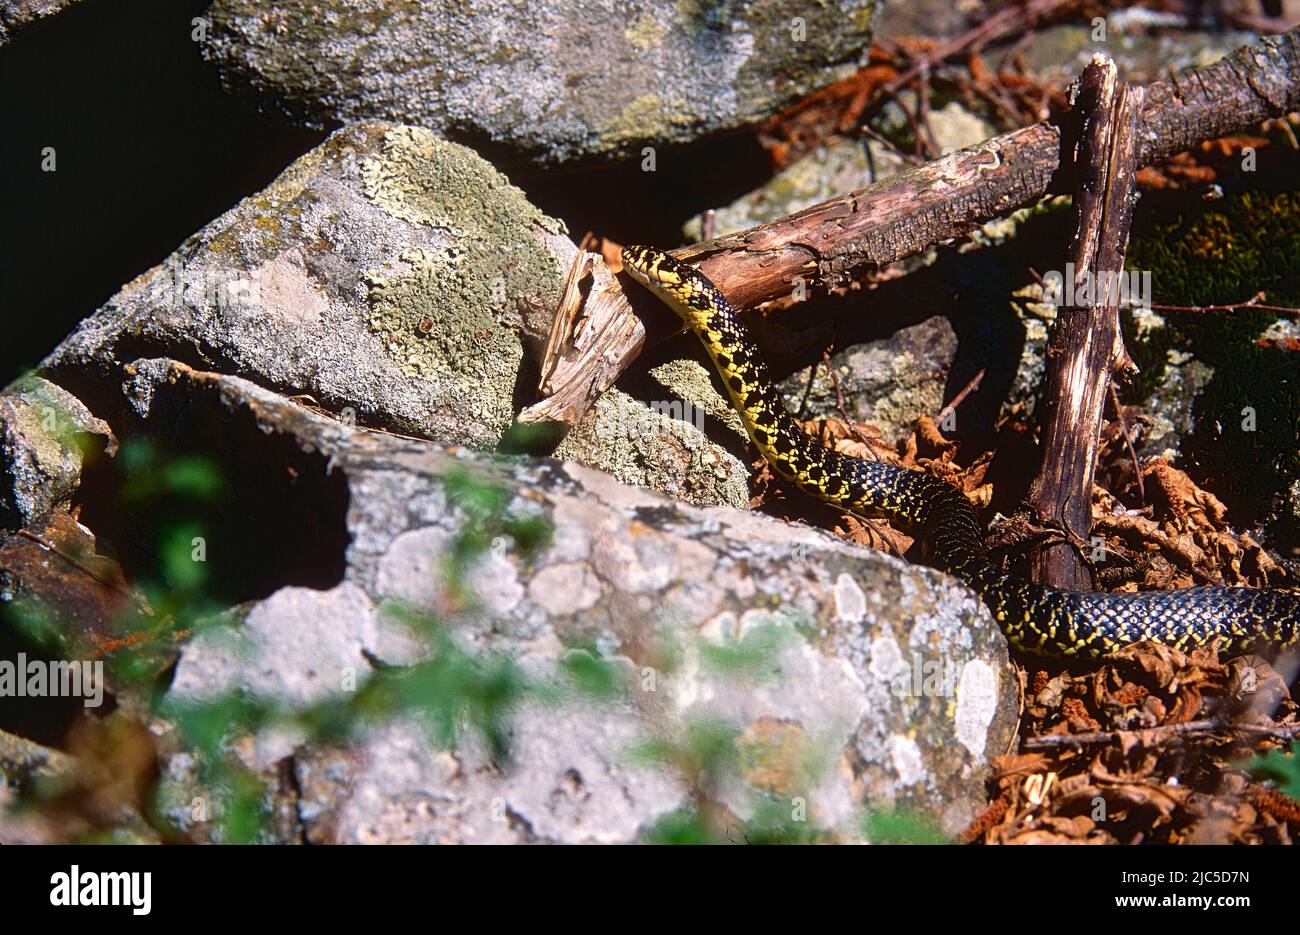 Gelbgrüne Zornnatter, Hierophis viridiflavus, Colubridae, Schlange, Reptil. Tier, bei Campello, Kanton Tessin, Schweiz Stock Photo